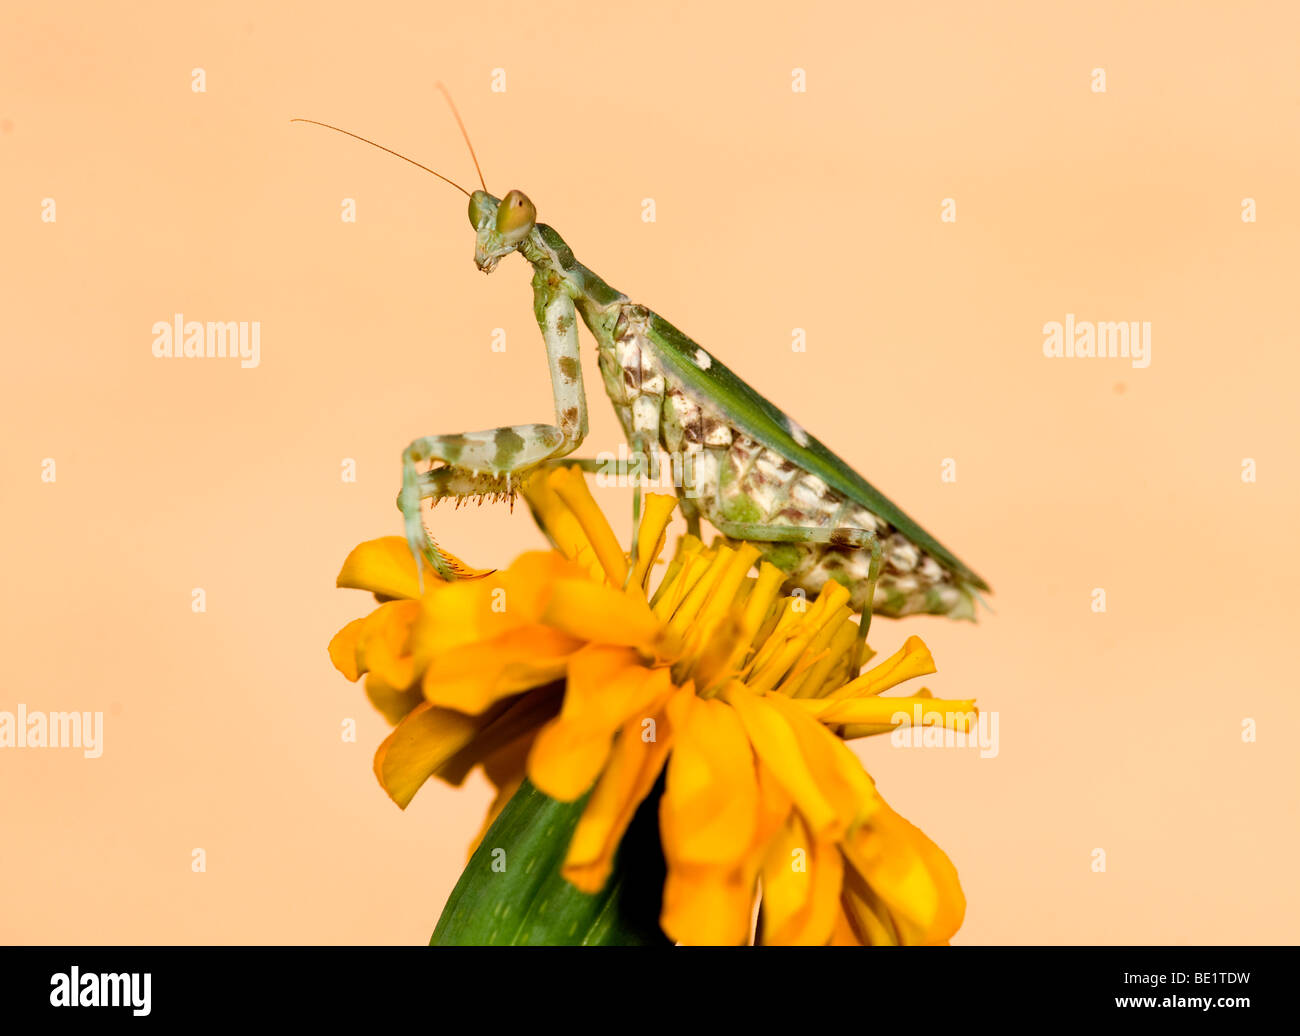 Mantis Flor indio Creobroter meleagris Parque Nacional Bandhavgarh mantid en flor amarilla Foto de stock